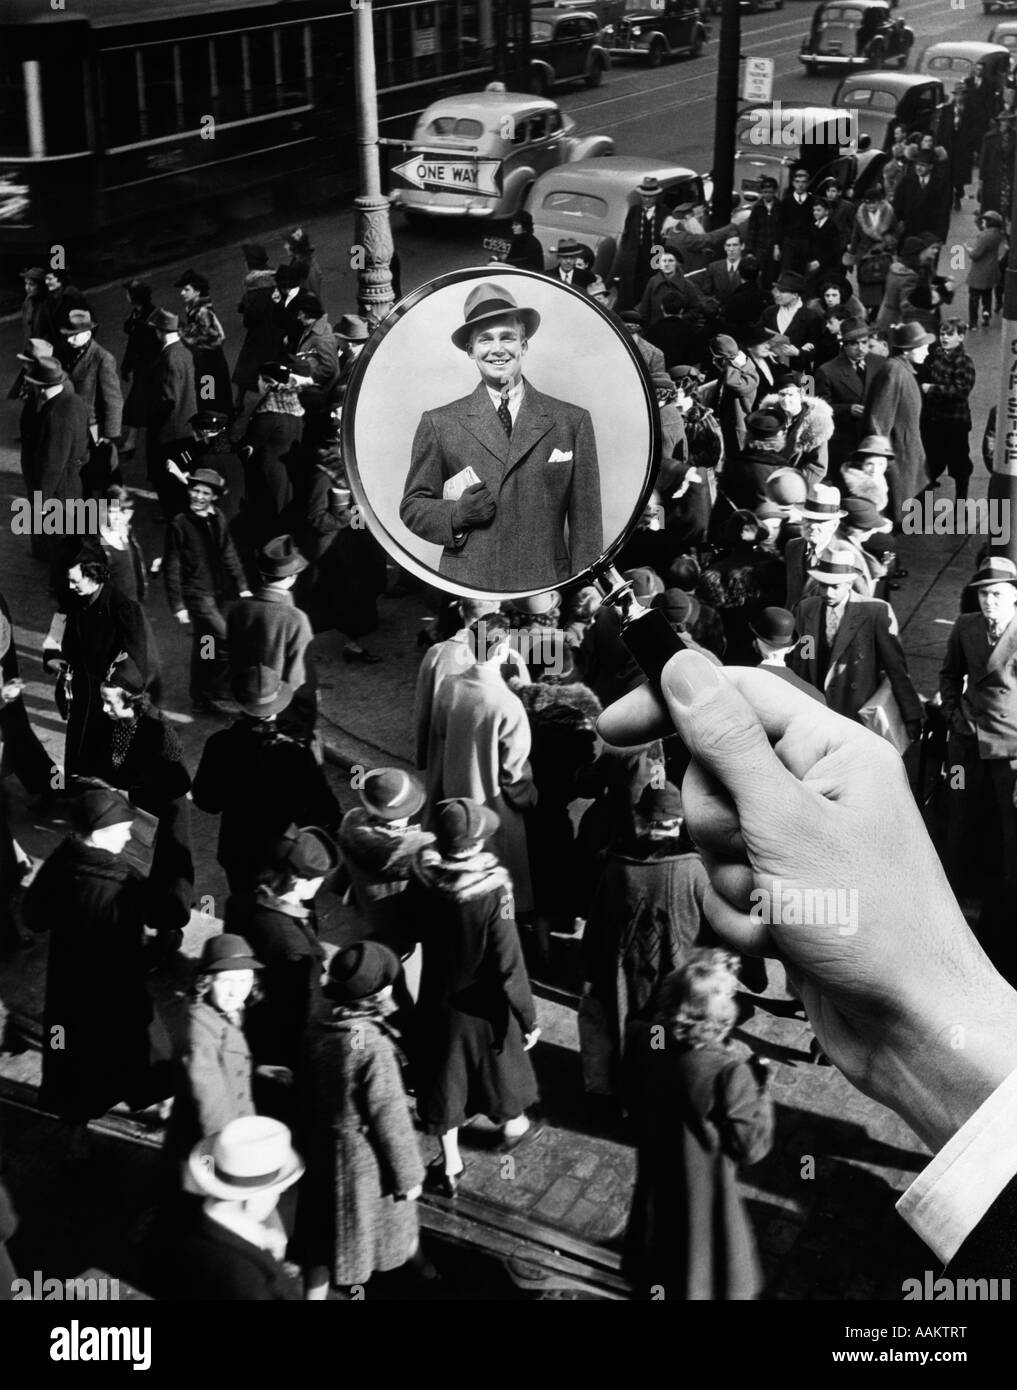 1930s 1940s strada pedonale folla LENTE DI INGRANDIMENTO focalizzata sul singolo ben vestito uomo un volto nella folla Foto Stock